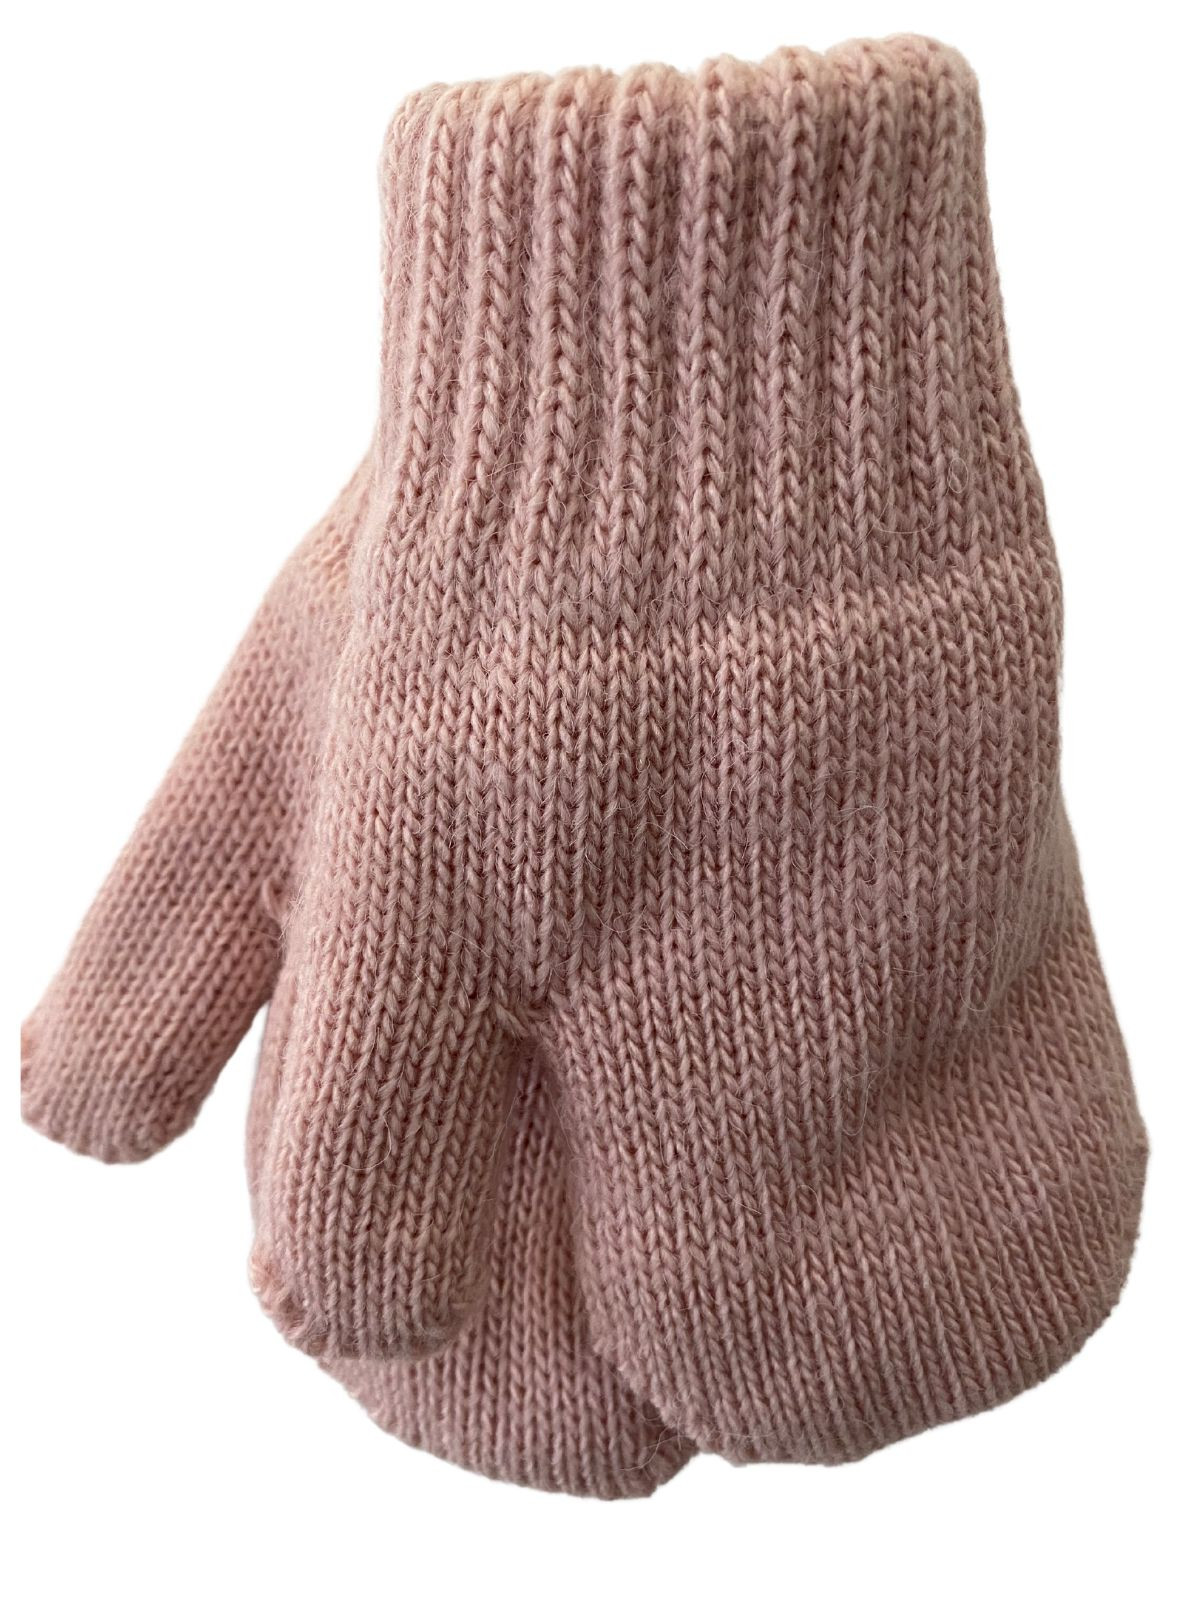 Mitaines tricotés pour enfant 2-3 ans, Basic_rose